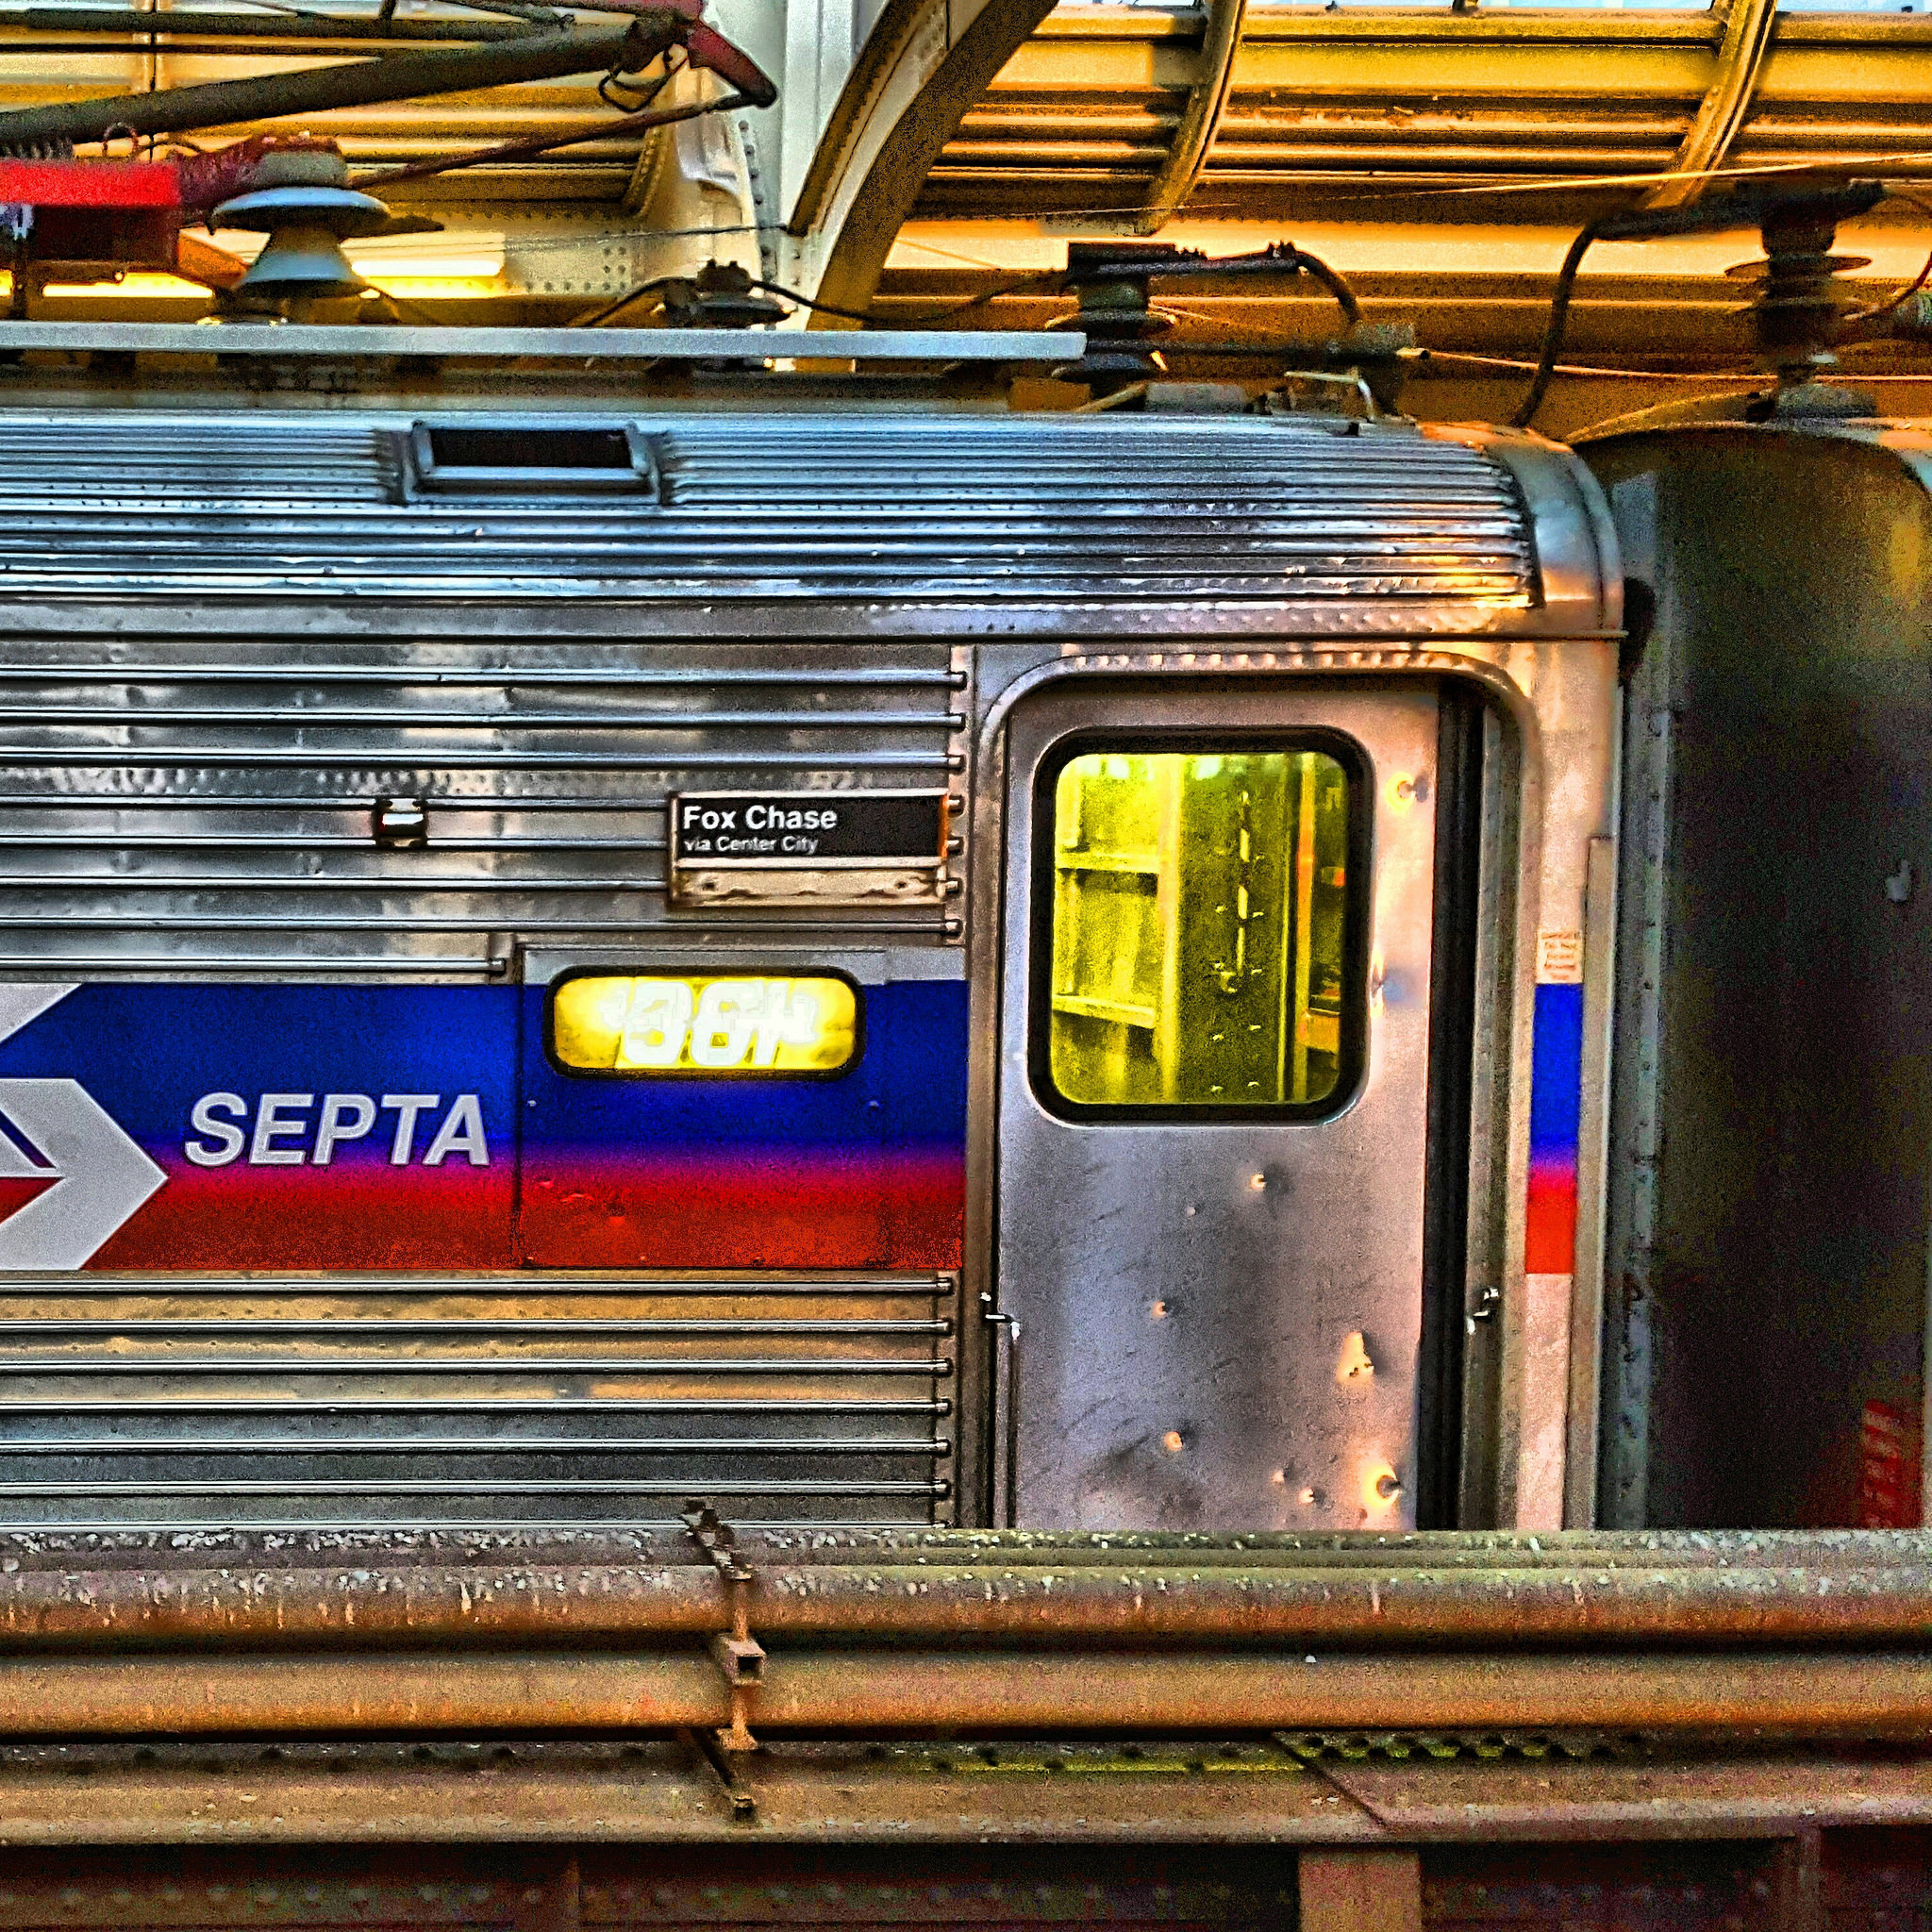 SEPTA regional rail | Bob Bruhin, EOTS Flickr Group